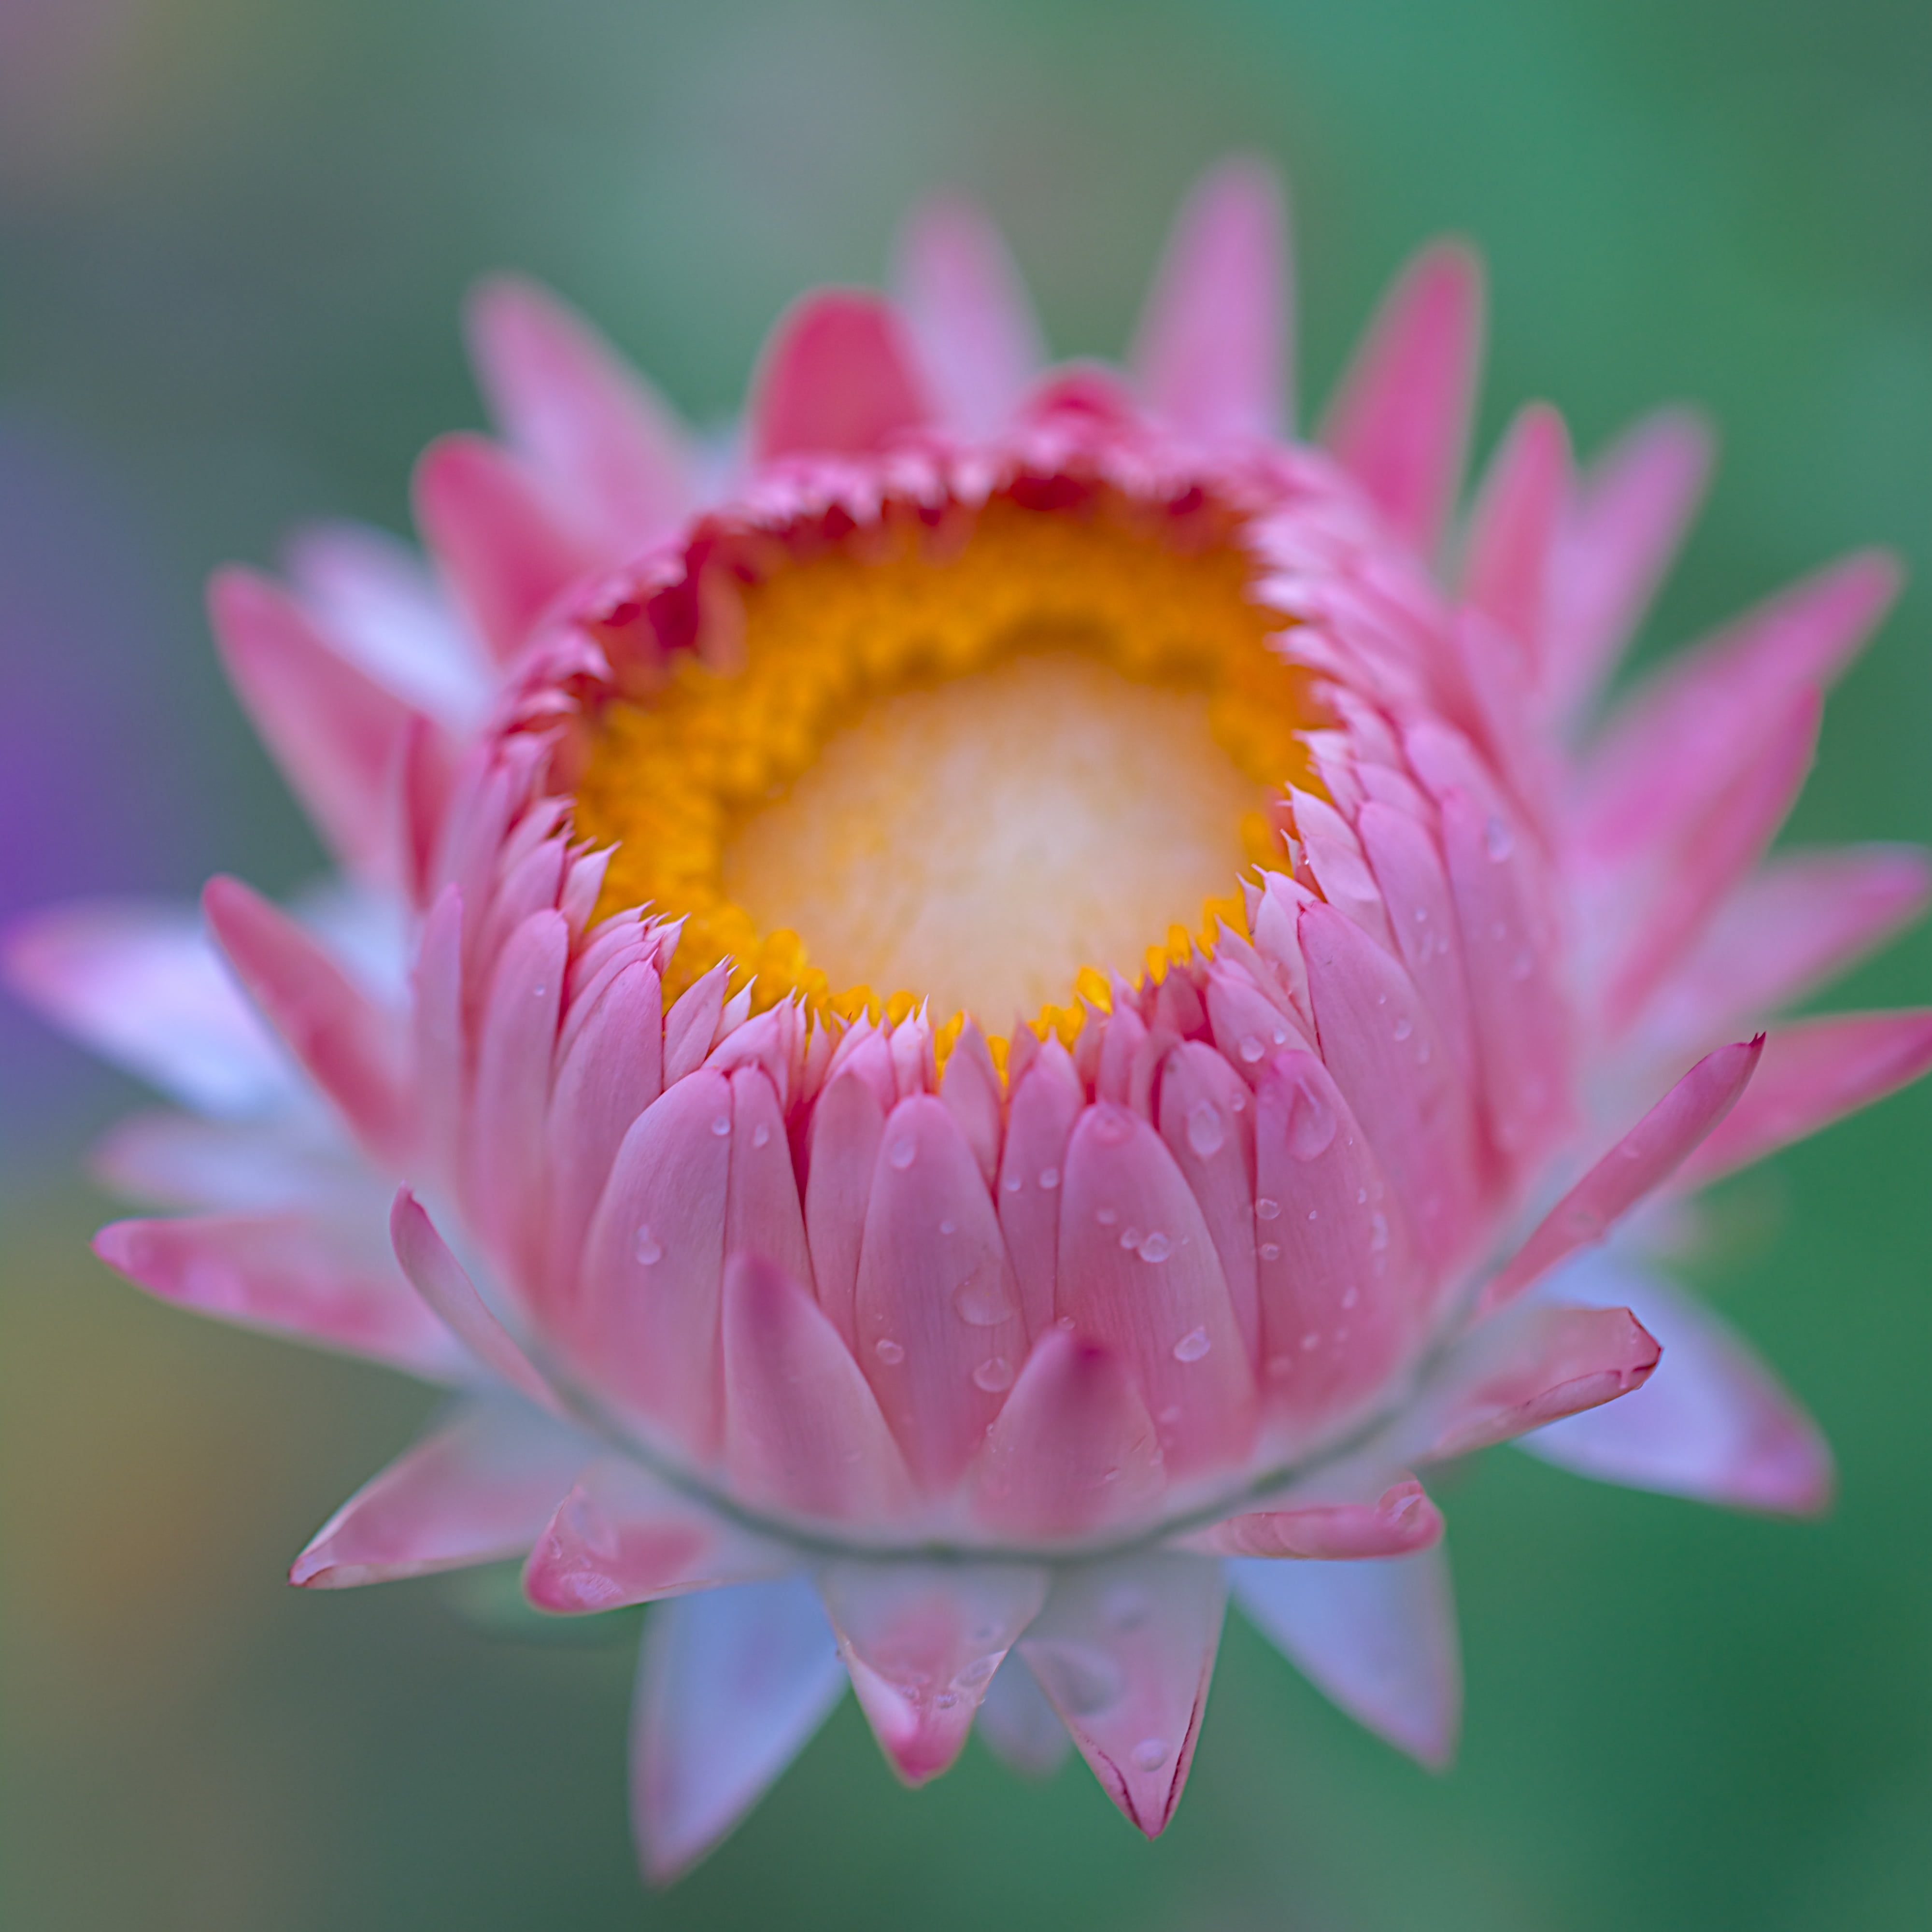 pink petaled flower in closeup shot, DSC, fleur, rain, natural  light